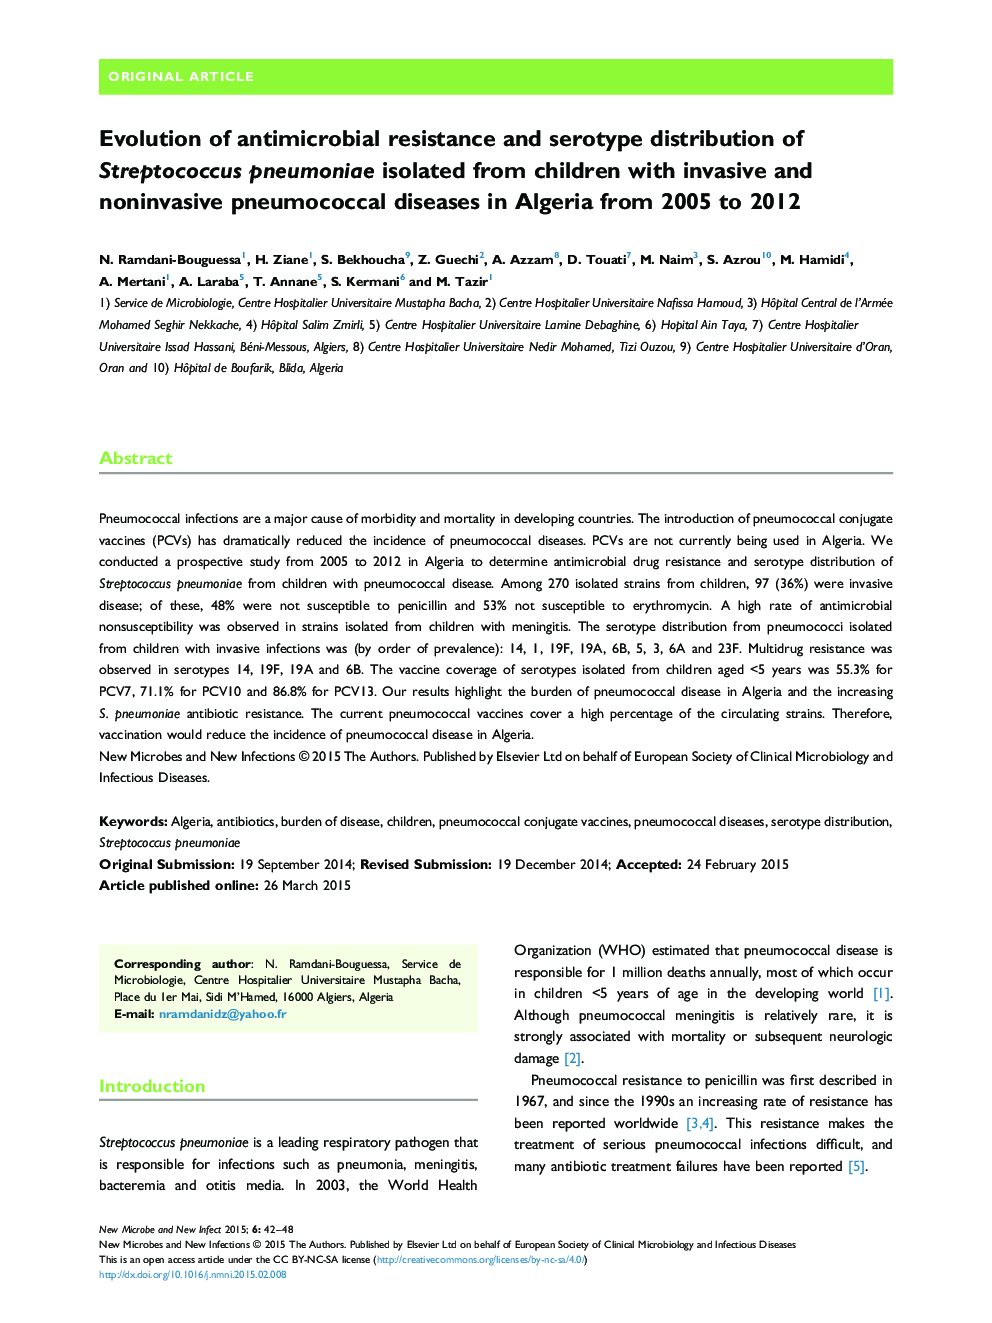 تکامل مقاومت ضد میکروبی و توزیع سروتیپ استرپتوکوک پنومونیه جدا شده از کودکان مبتلا به بیماری های پنوموکوک غیر مهاجم و غیر تهاجمی در الجزایر از سال های 2005 تا 2012 